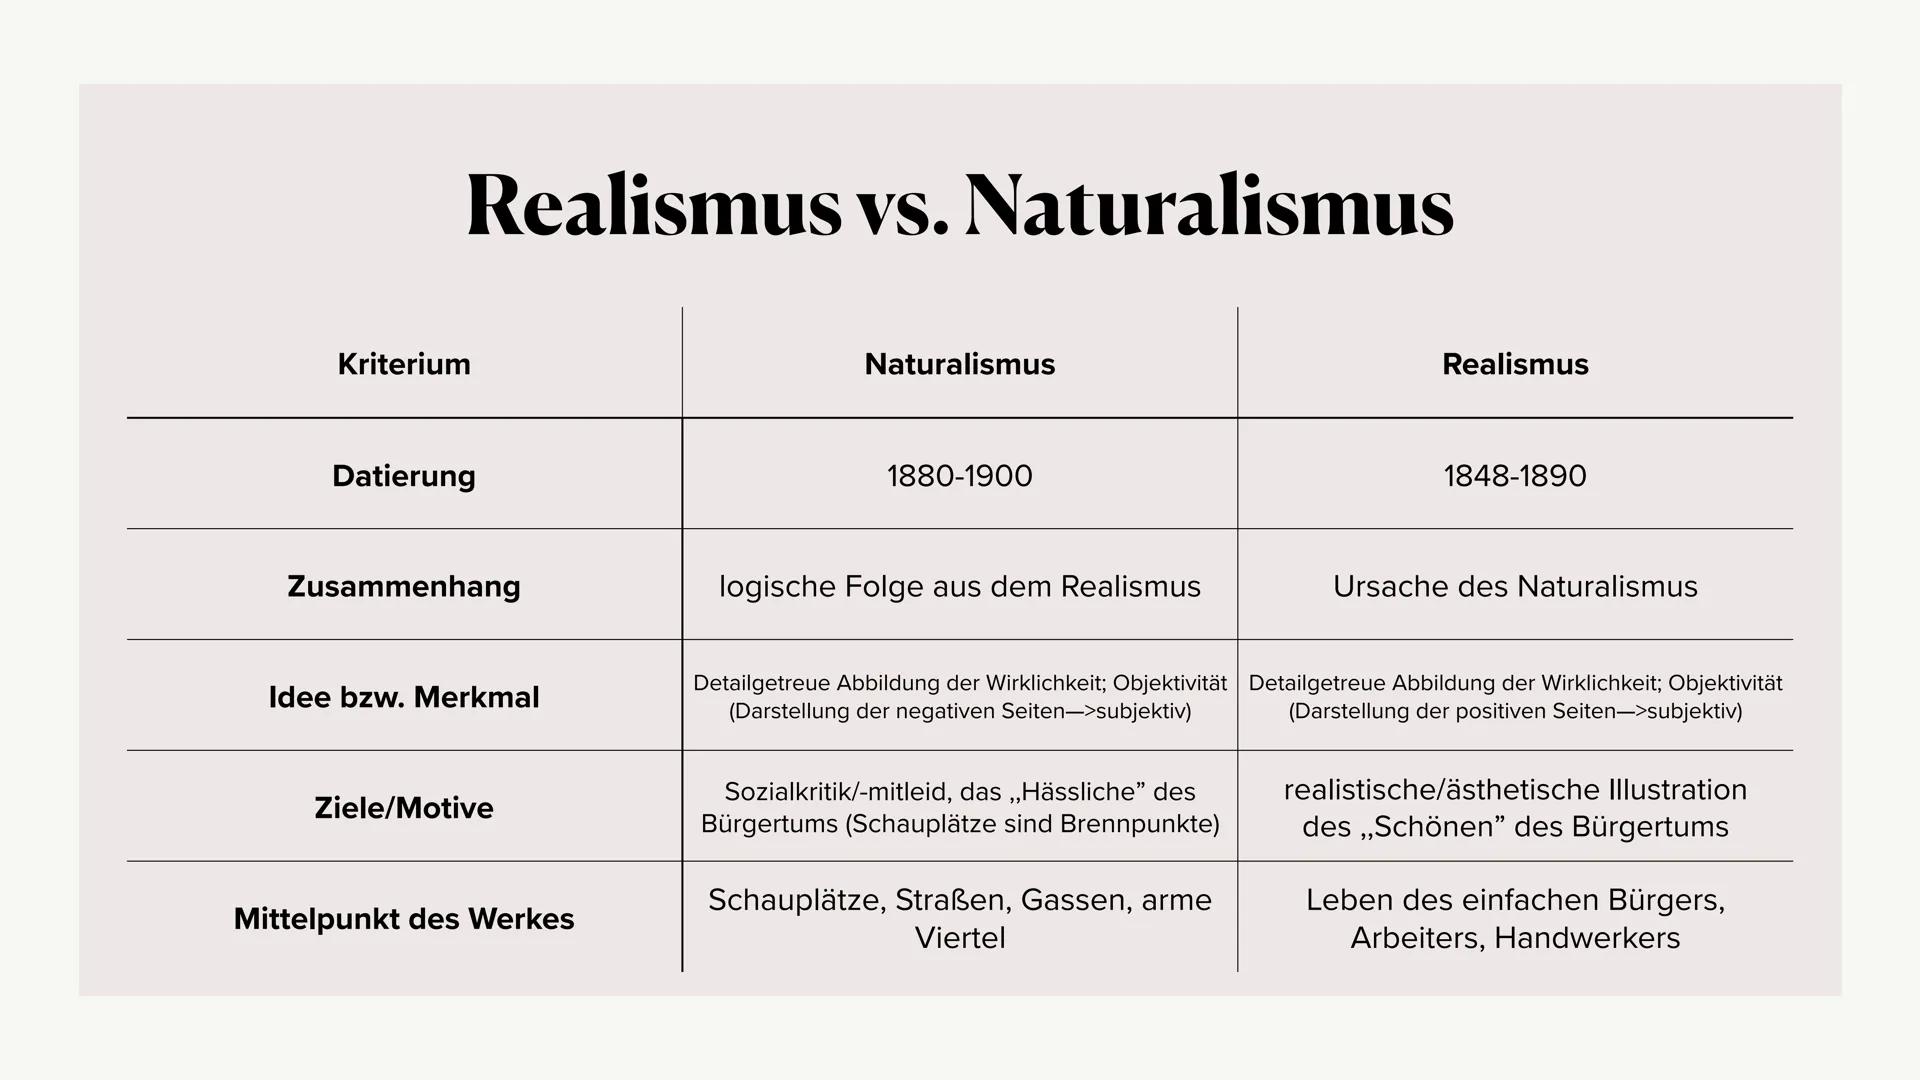 Die Epoche des
Realismus
Ästhetisierung des Wirklichen
(in Deutschland) ●
• Definition
Merkmale des Realismus
Einordnung in den historischen